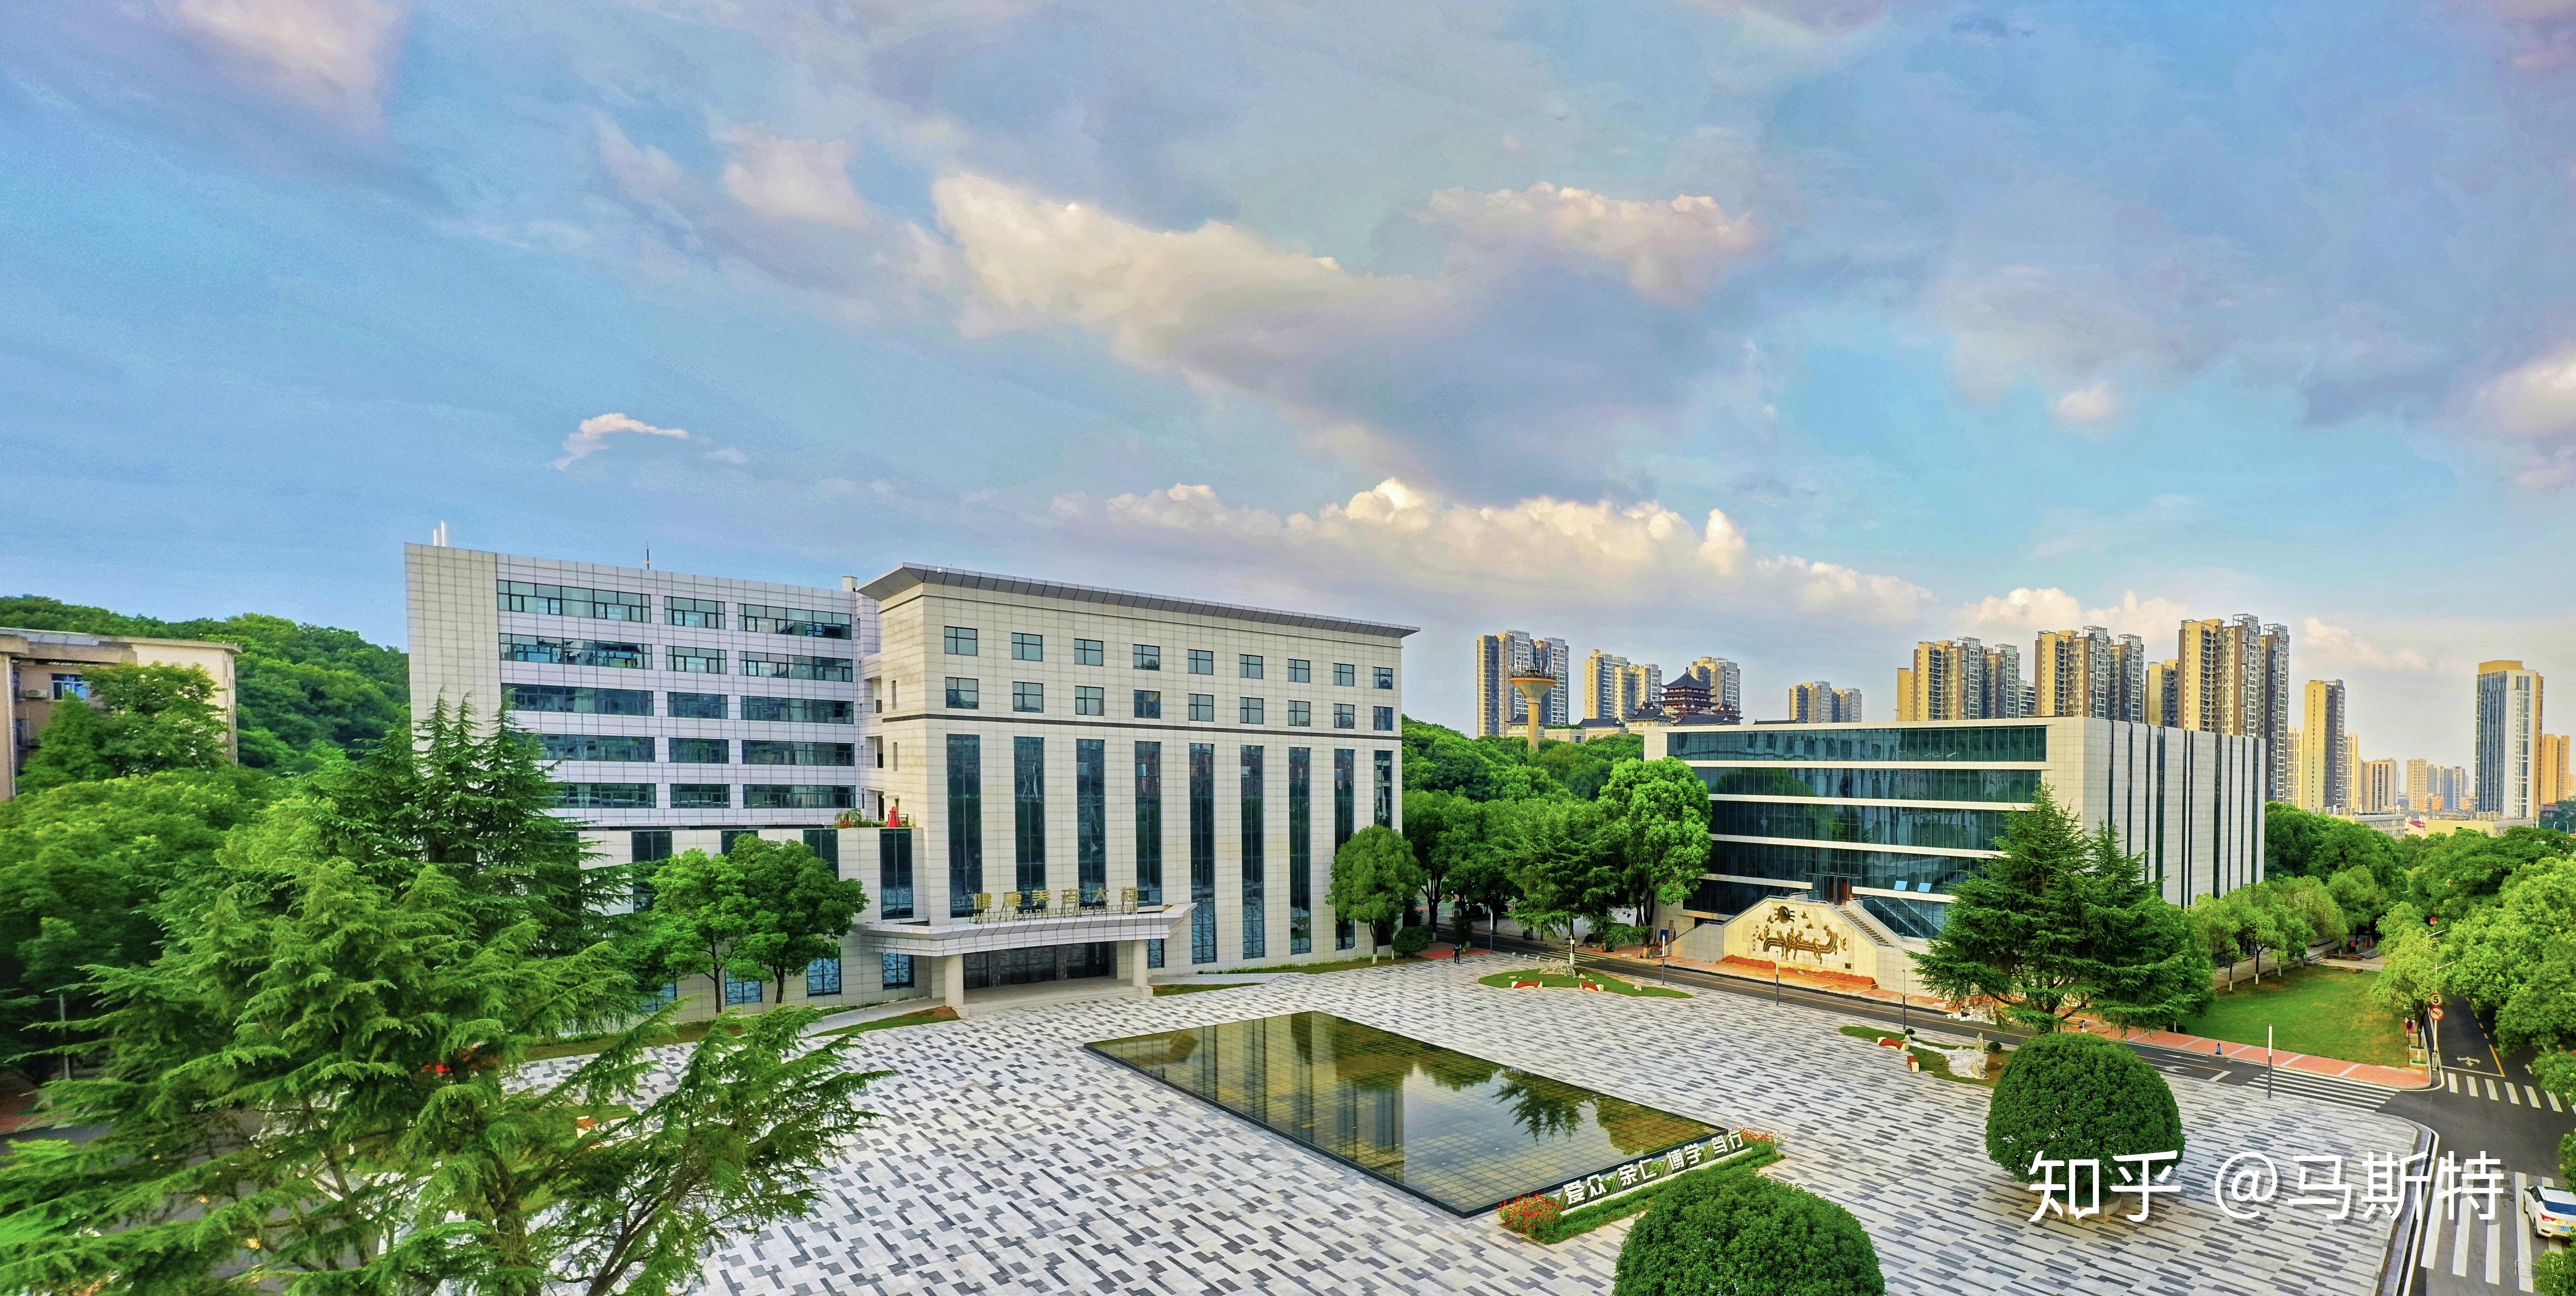 长沙市第一医院腾出一栋楼专门用于收治确诊病例 - 三湘万象 - 湖南在线 - 华声在线